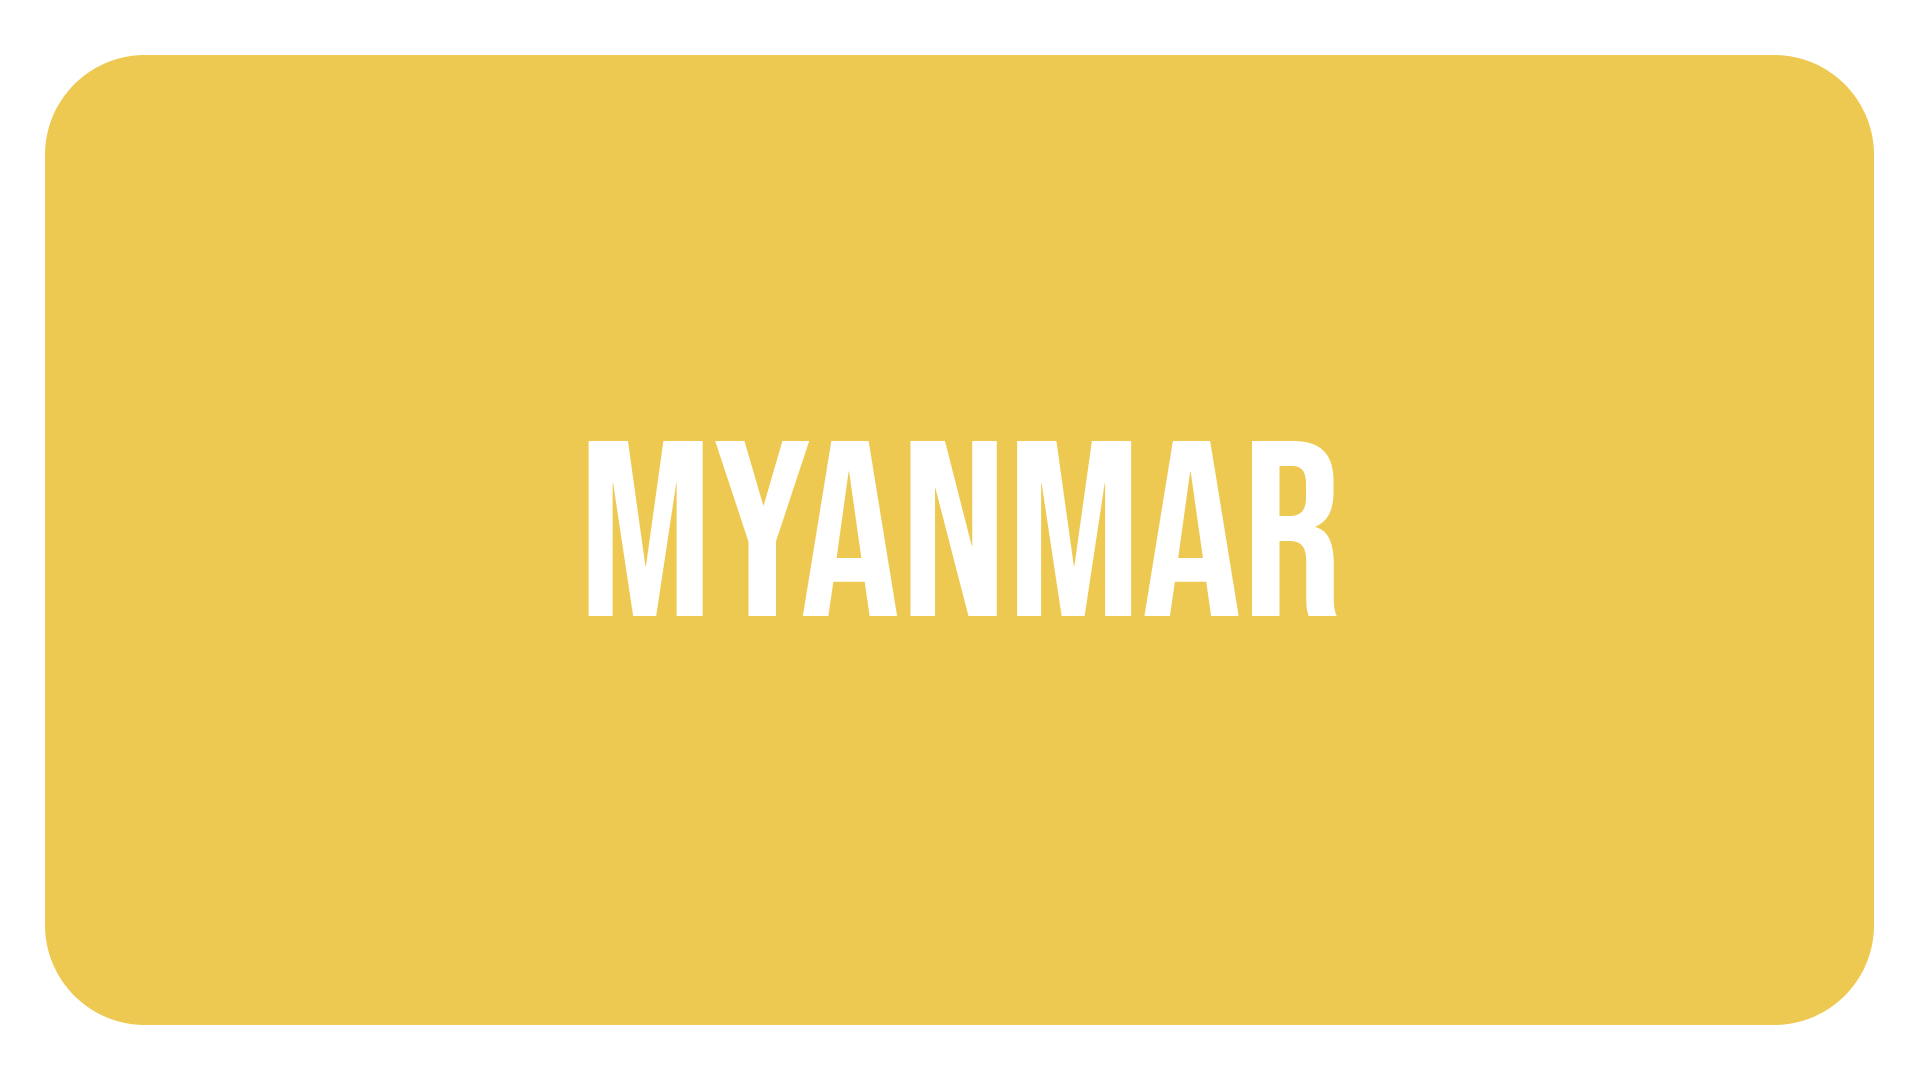 IMAGEN MYANMAR